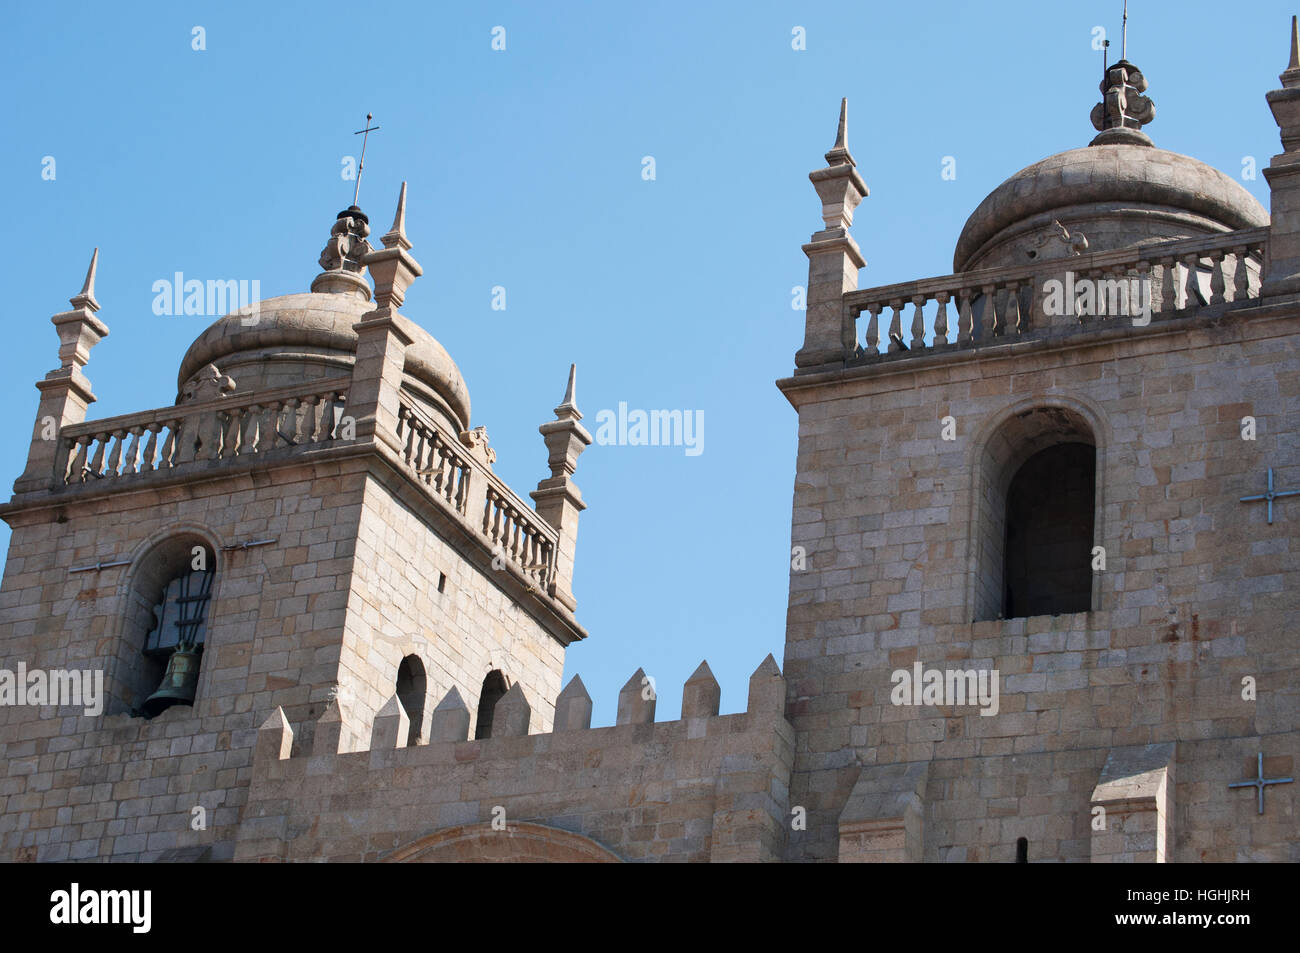 Porto : Détails de les clochers de la sé do Porto, la cathédrale de la vieille ville, l'un des plus anciens monuments de la ville. Banque D'Images